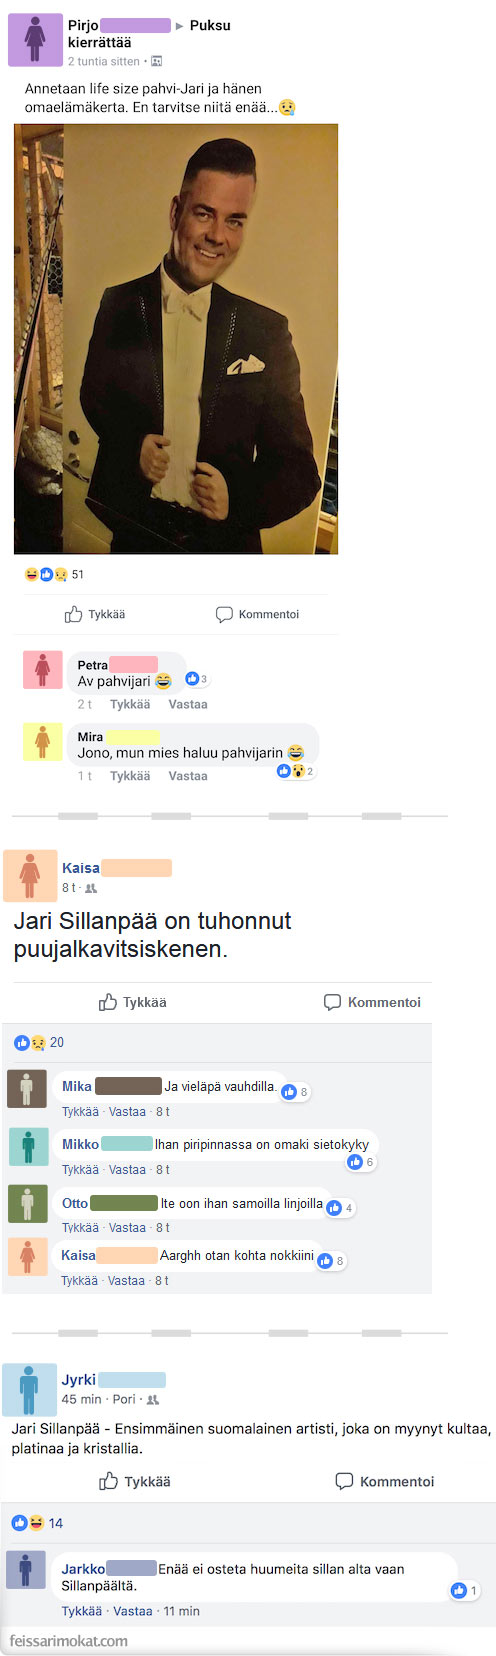 Jari Sillanpää